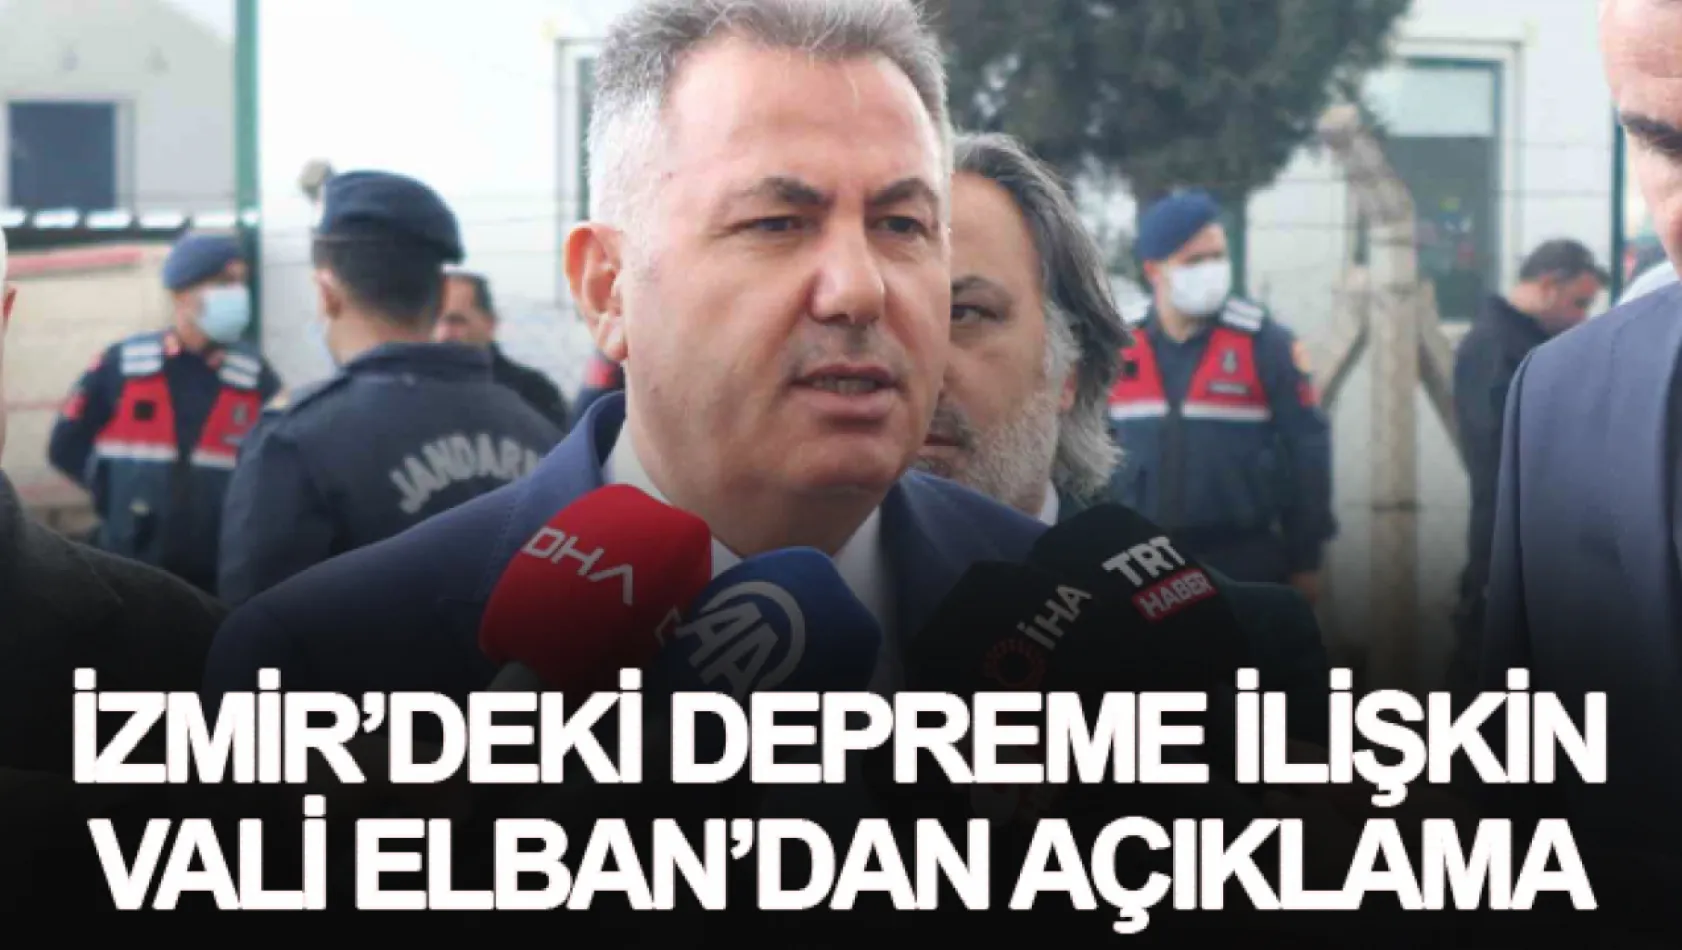 İzmir'deki depreme ilişkin Vali Elban'dan açıklama